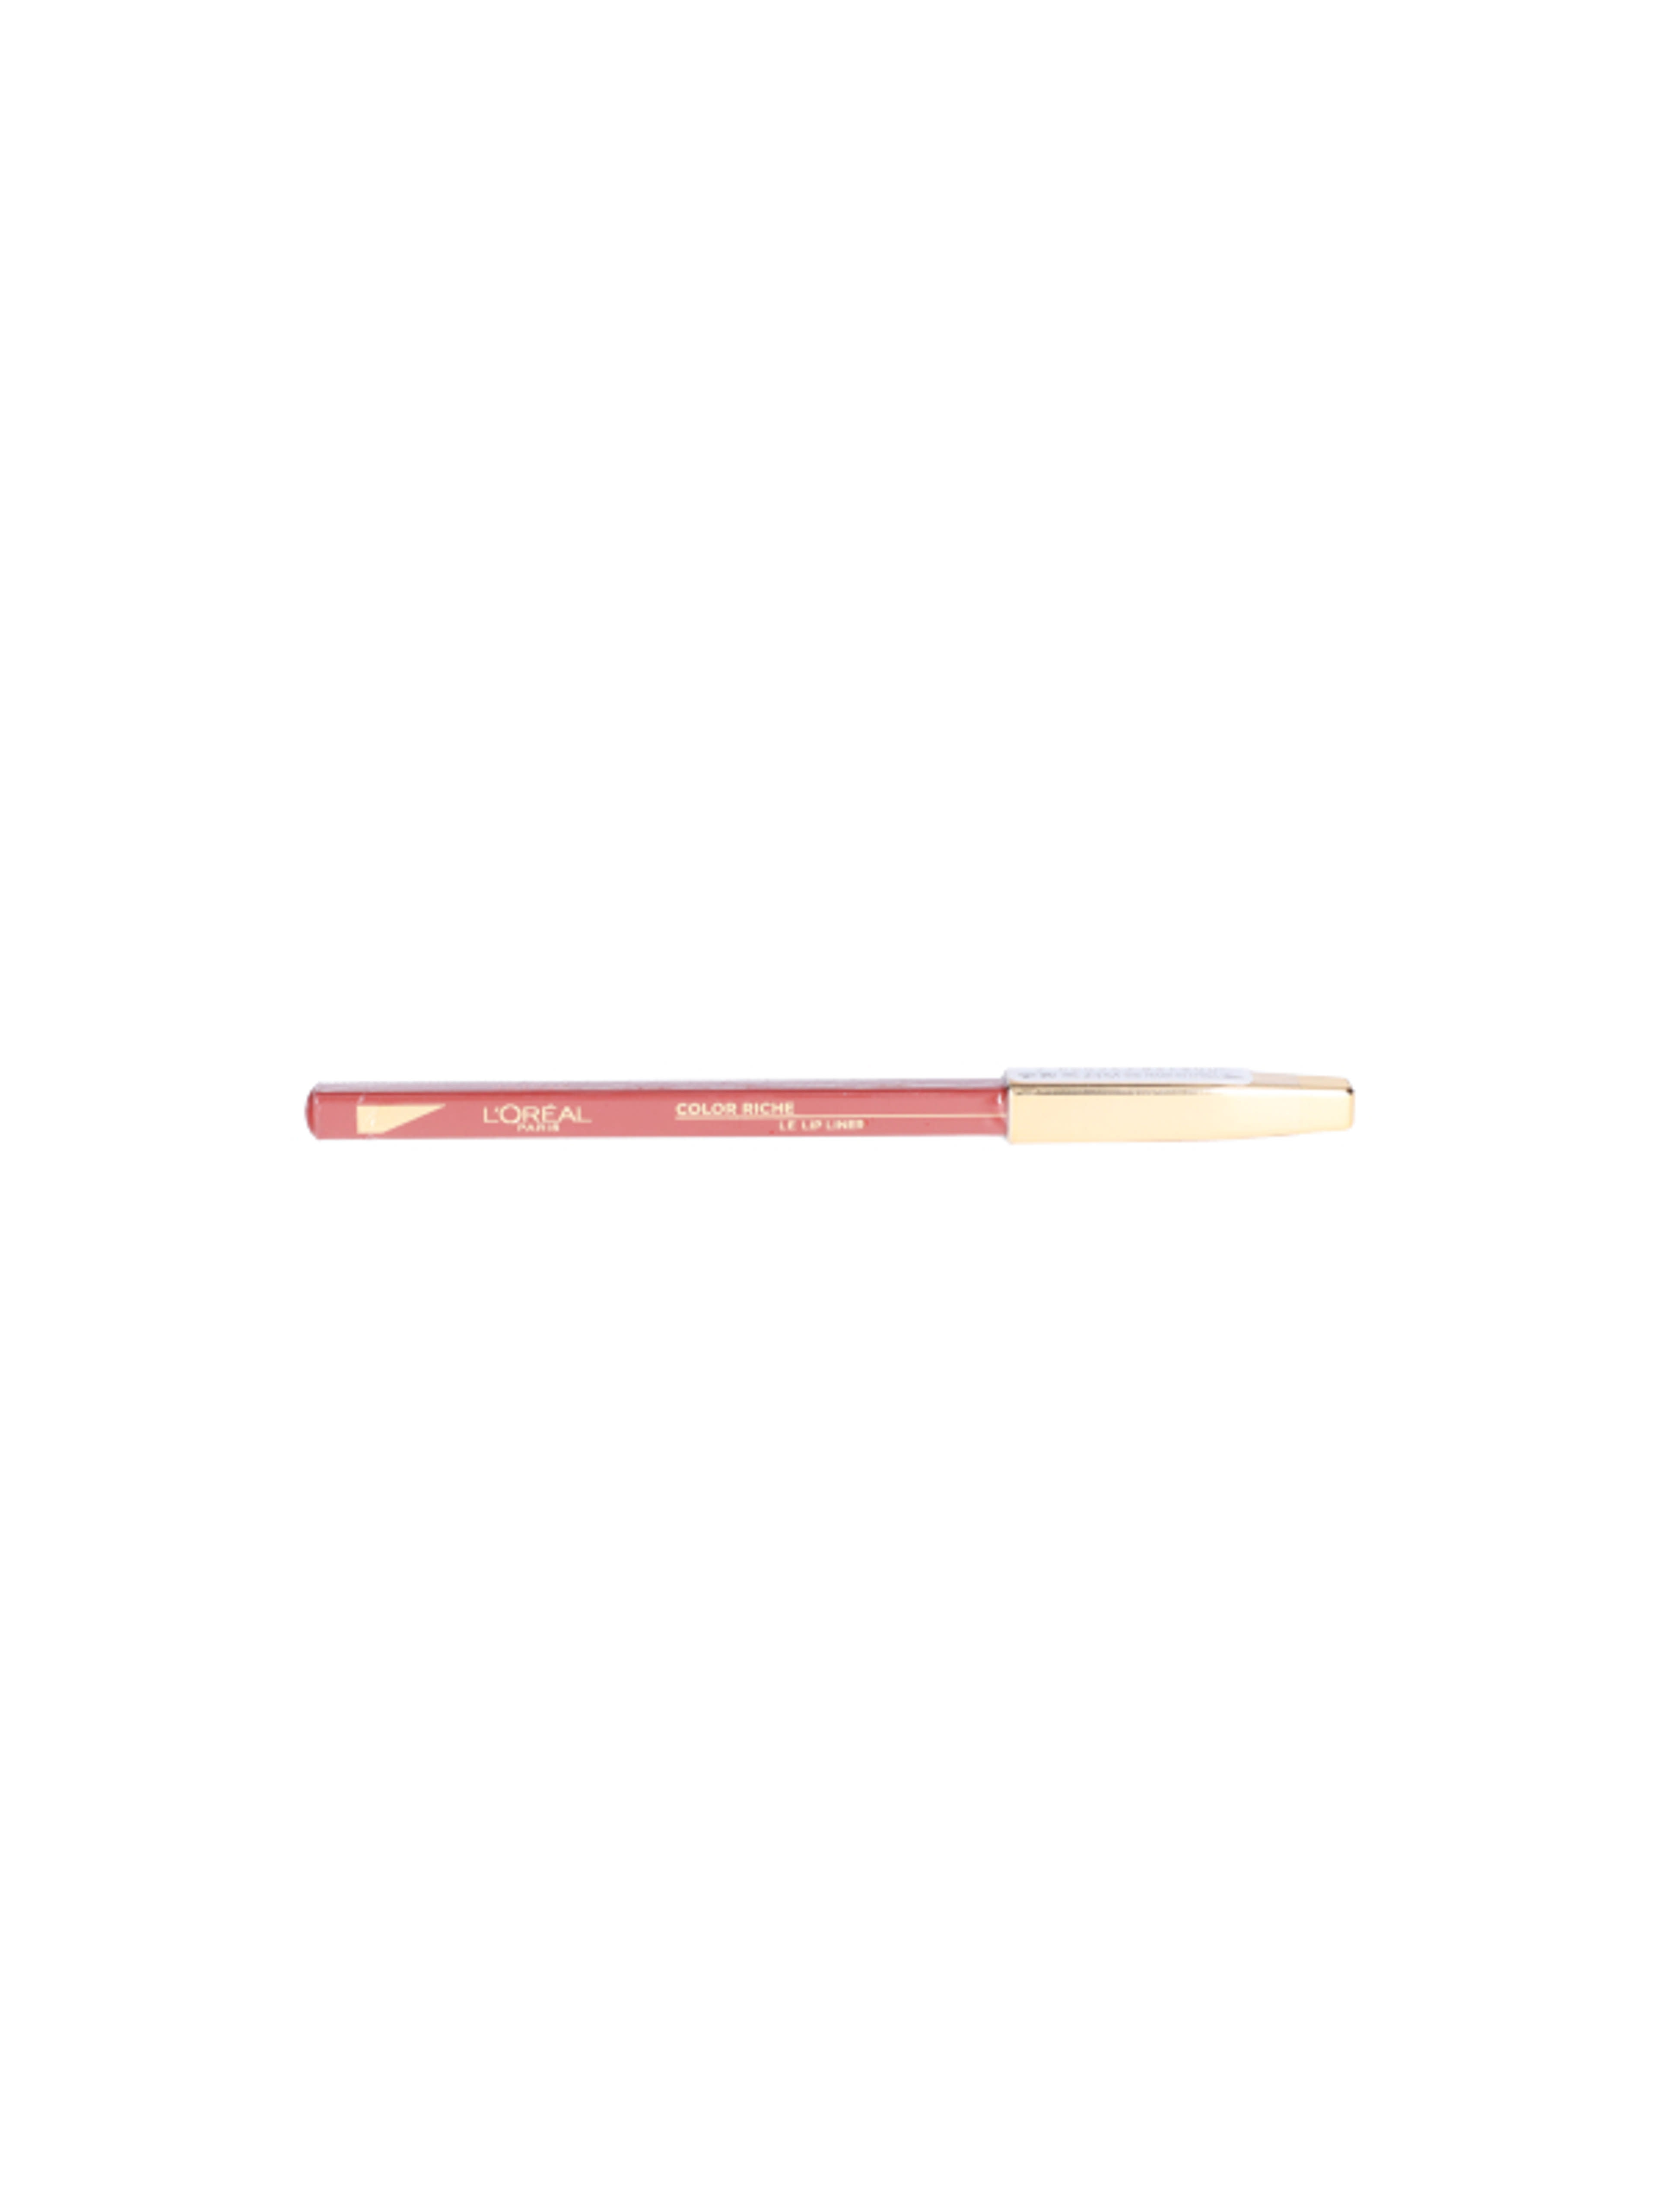 L'Oréal Paris Color Riche ajakkontúr ceruza 126 - 1 db